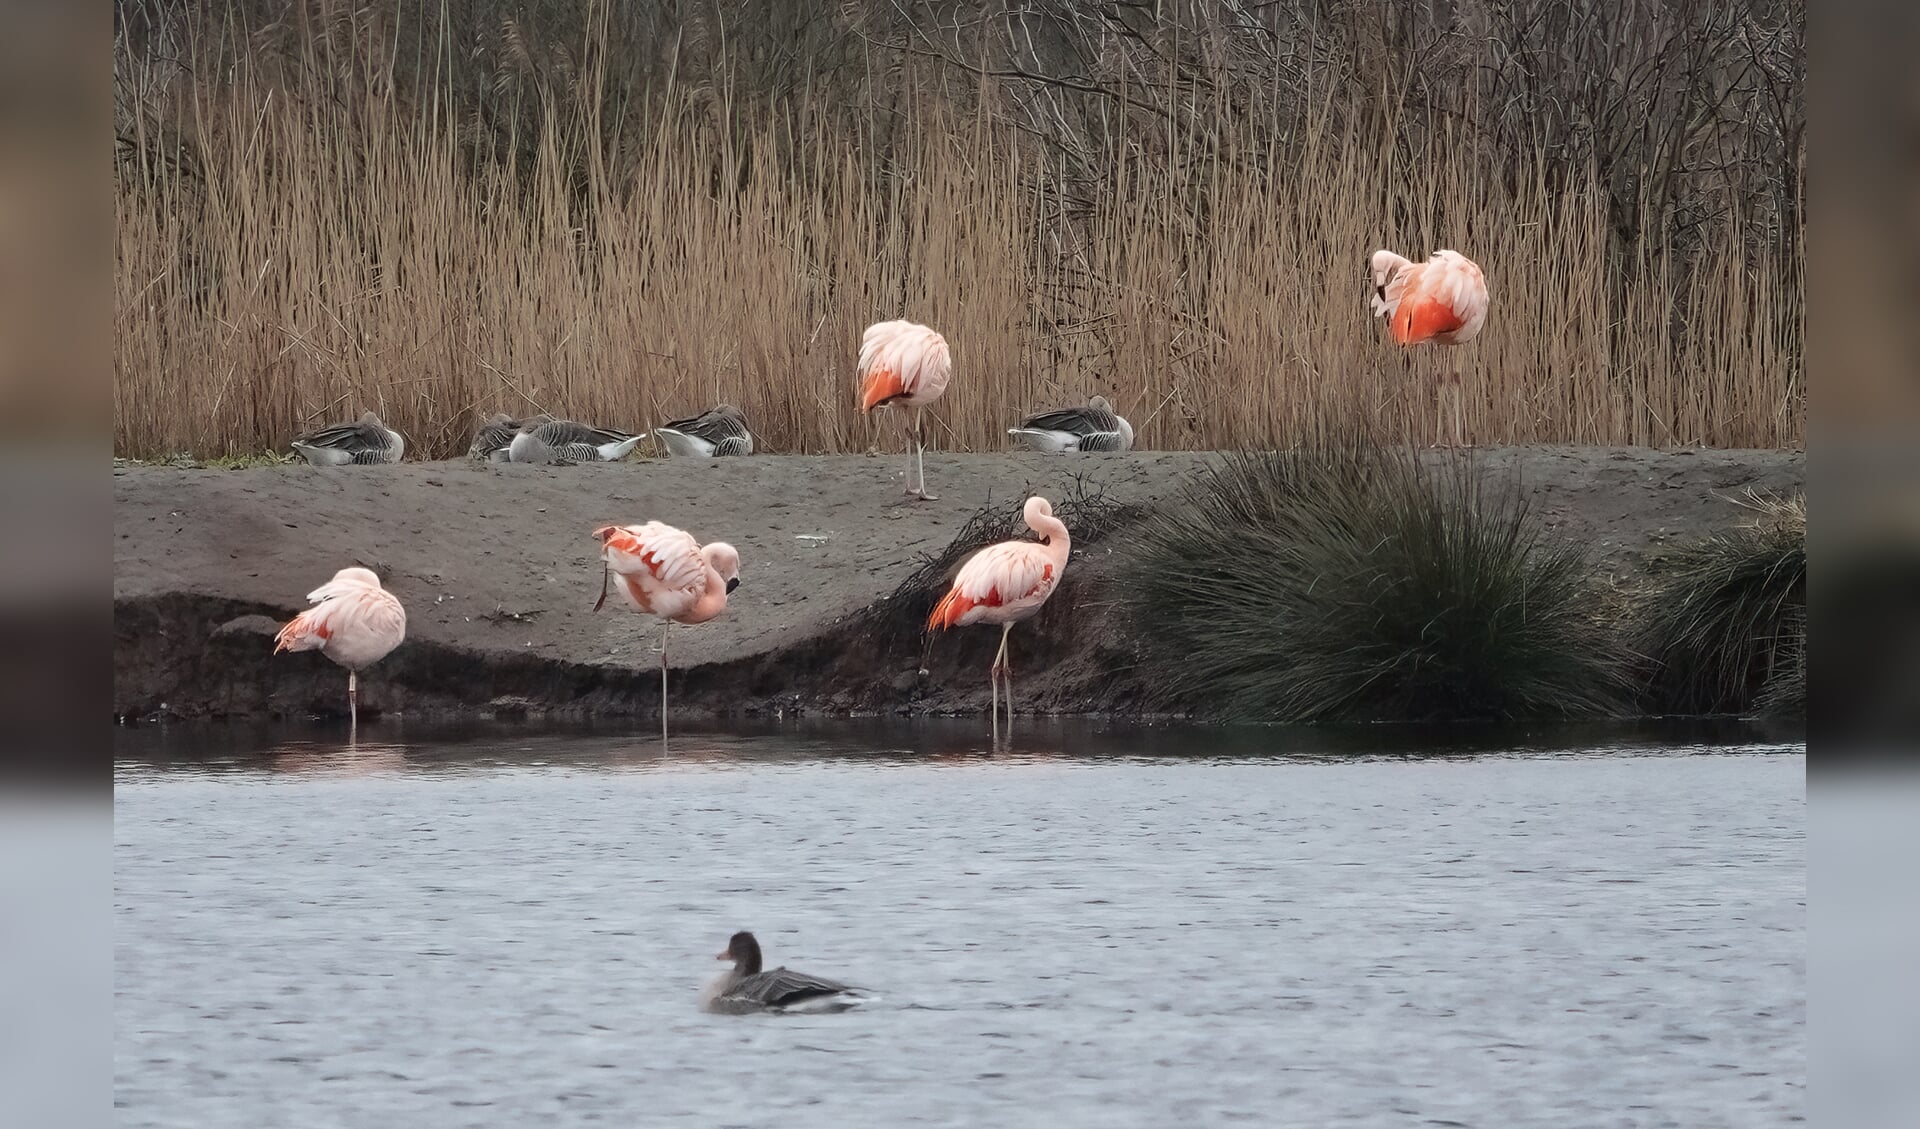 De eerste flamingo's zijn neergestreken bij het Zwillbrocker Ven om te verkennen. Foto: Willemien Smeitink